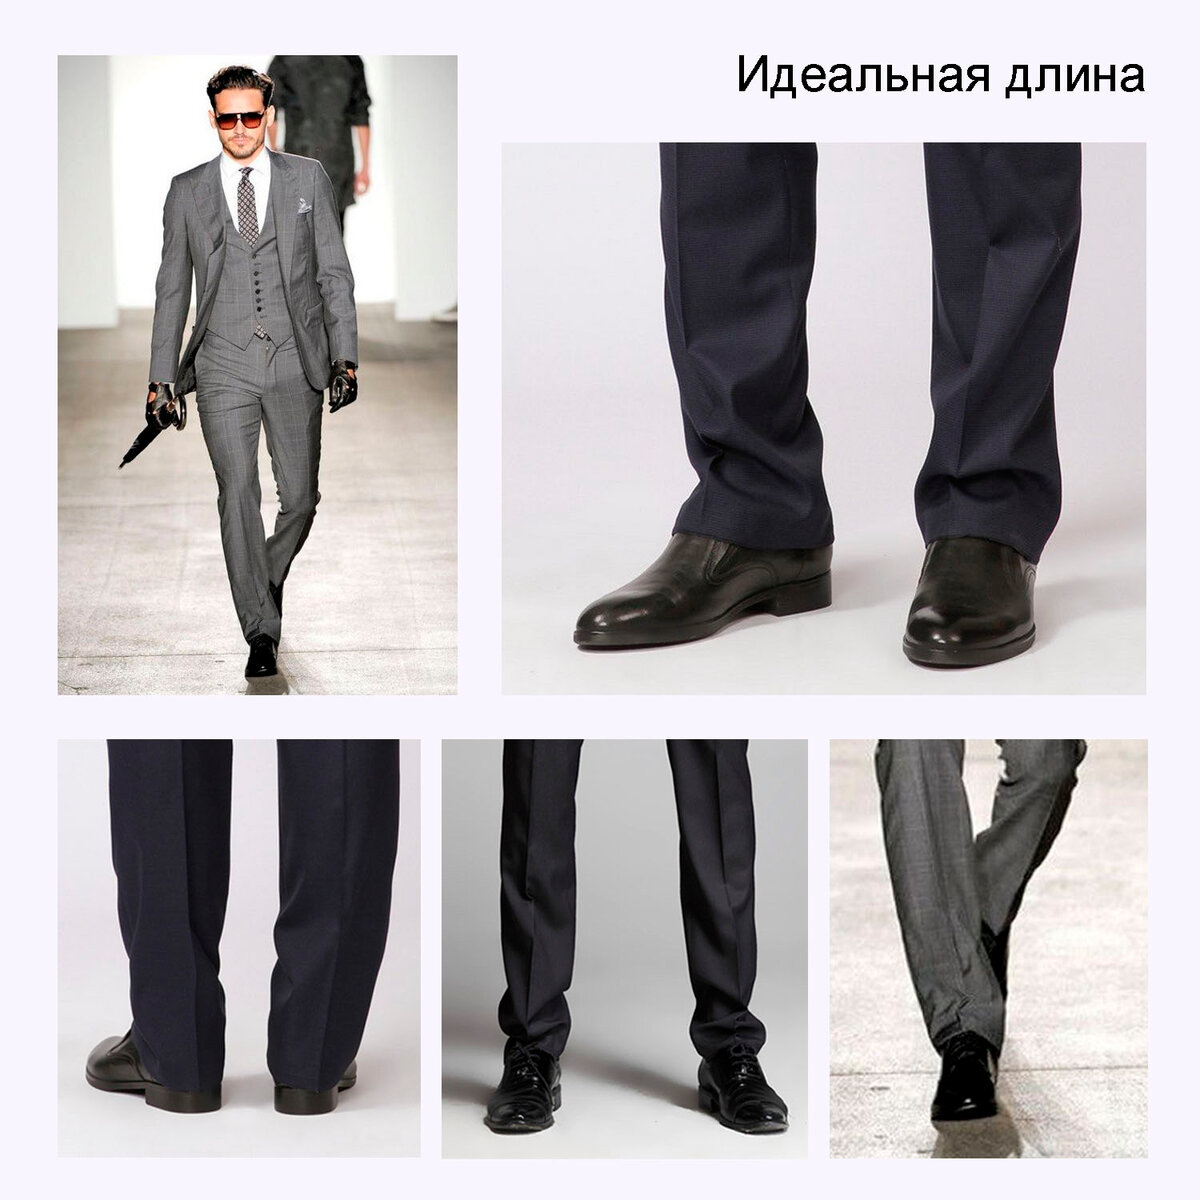 Как сочетать брюки и обувь по стилю и цвету для мужчин